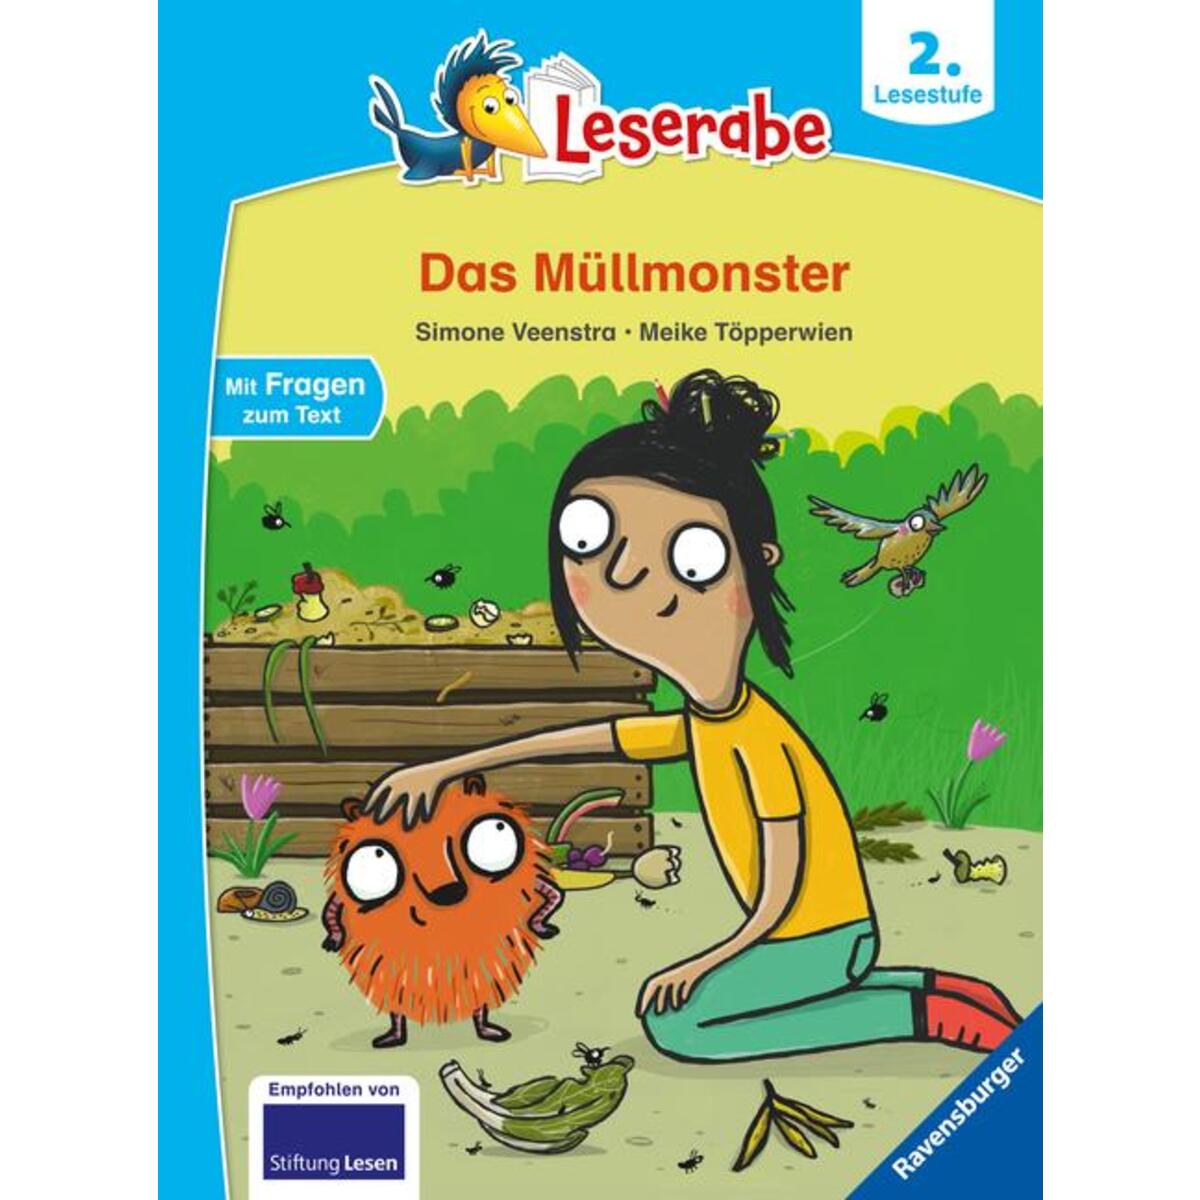 Das Müllmonster - Leserabe ab 2. Klasse - Erstlesebuch für Kinder ab 7 Jahren von Ravensburger Verlag